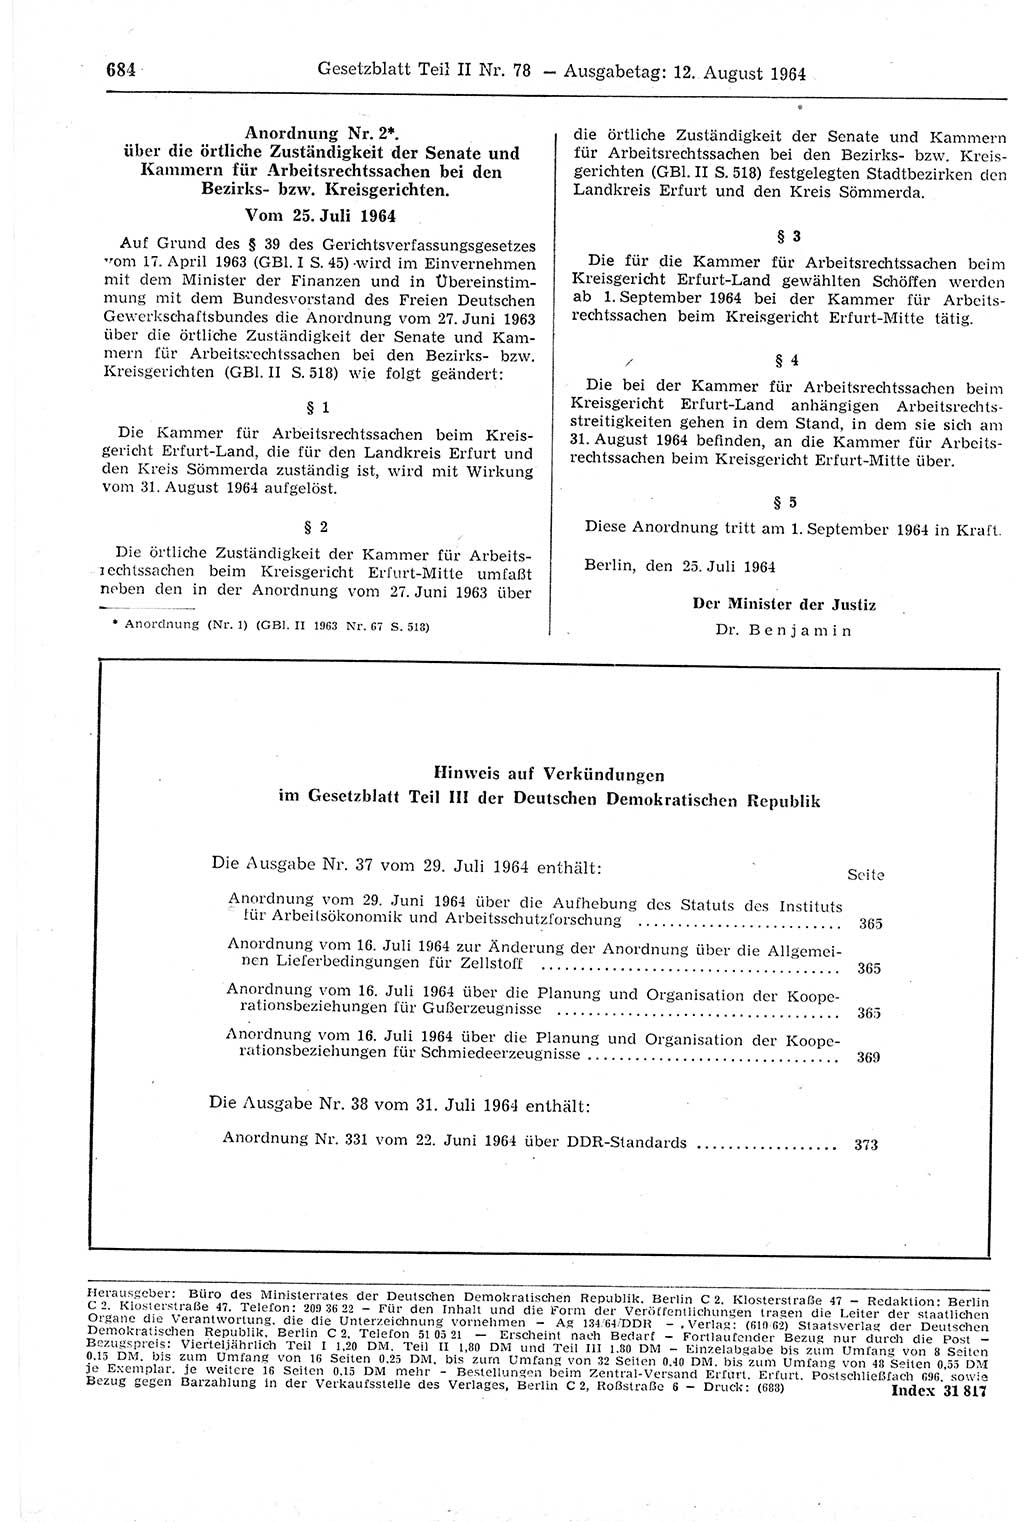 Gesetzblatt (GBl.) der Deutschen Demokratischen Republik (DDR) Teil ⅠⅠ 1964, Seite 684 (GBl. DDR ⅠⅠ 1964, S. 684)